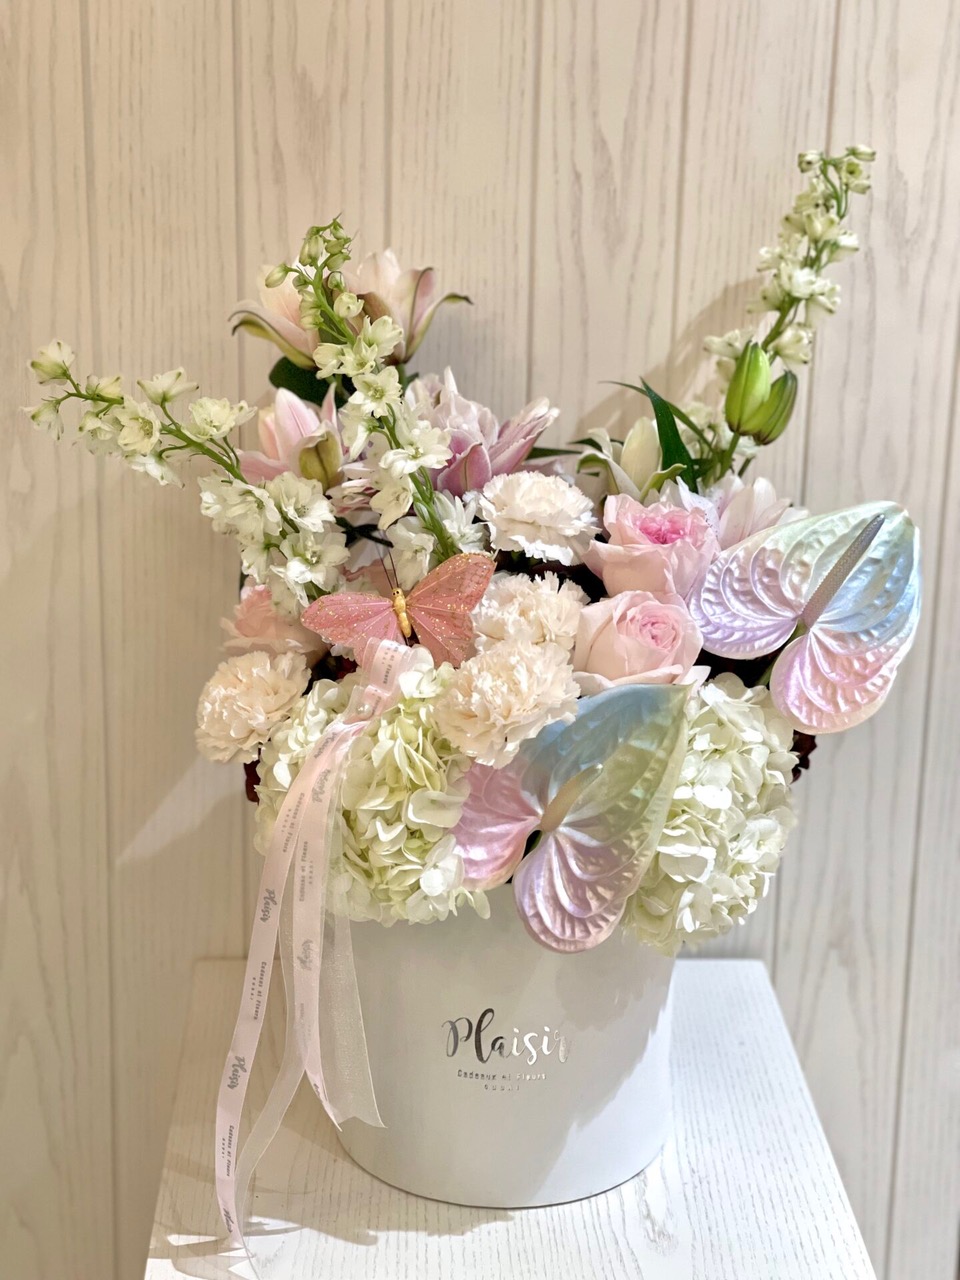 Dubai's Best Flower Delivery Services: A Comprehensive Review for Plaisir  Cadeaux et Fleurs - Online Flower Delivery Dubai, Flower Store Dubai